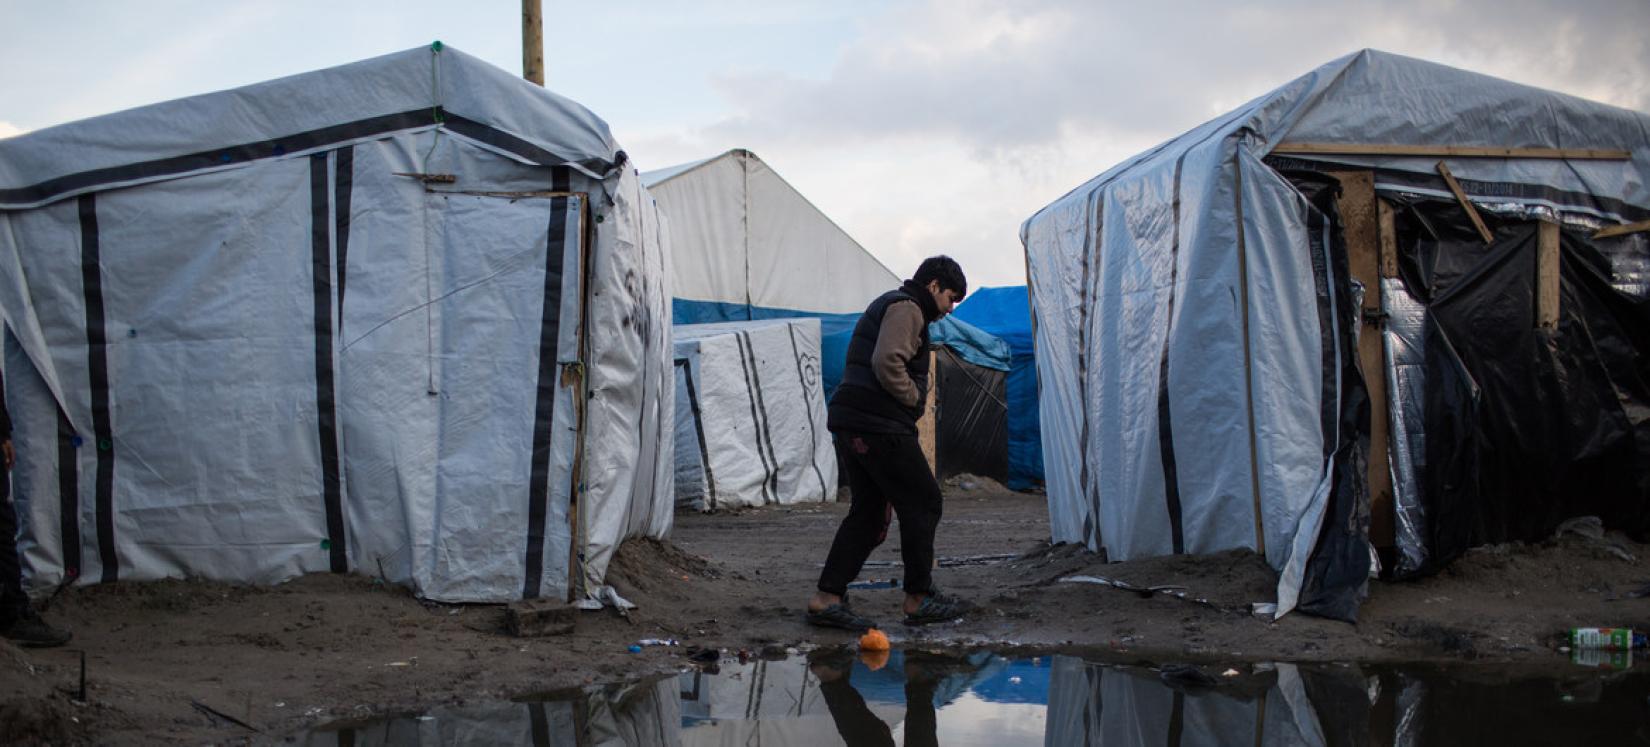 Menino caminha por um acampamento de migrantes em Calais, França. De acordo com as estimativas, cerca de 900 migrantes e requerentes de asilo estão abrigados na área, muitos sem banheiros ou lavatórios.